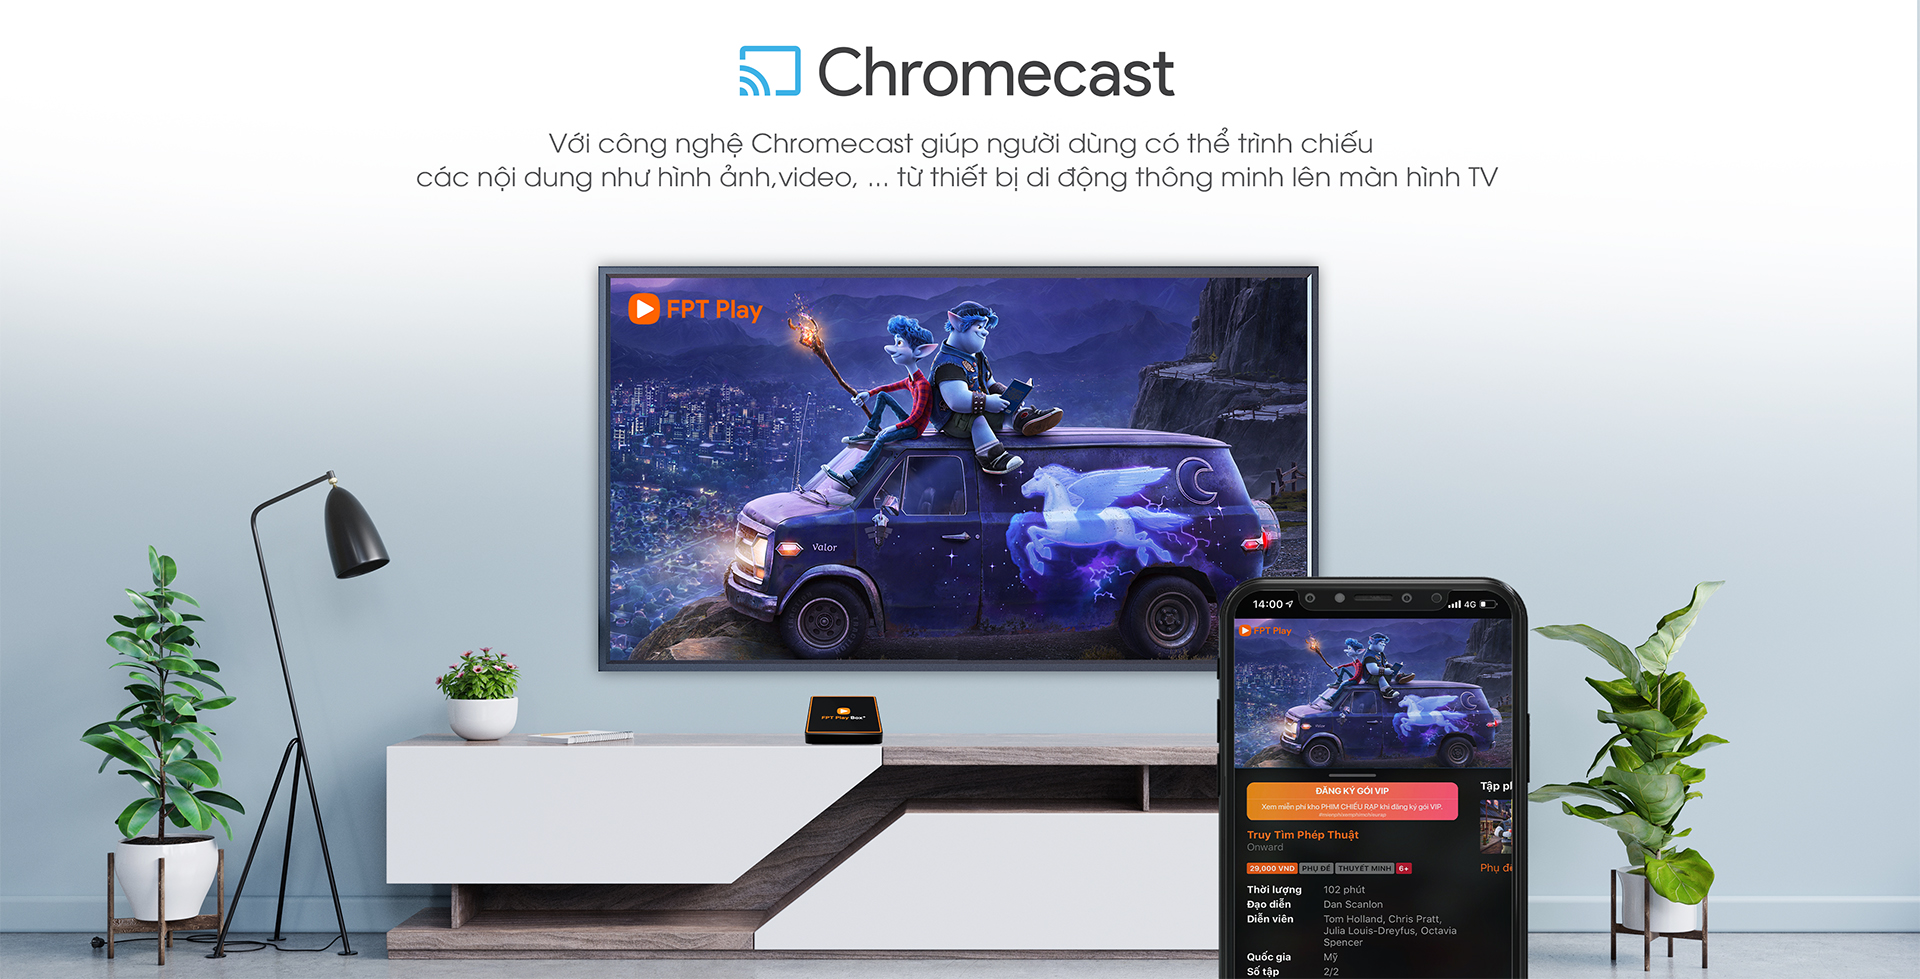 ứng dụng Chromecast